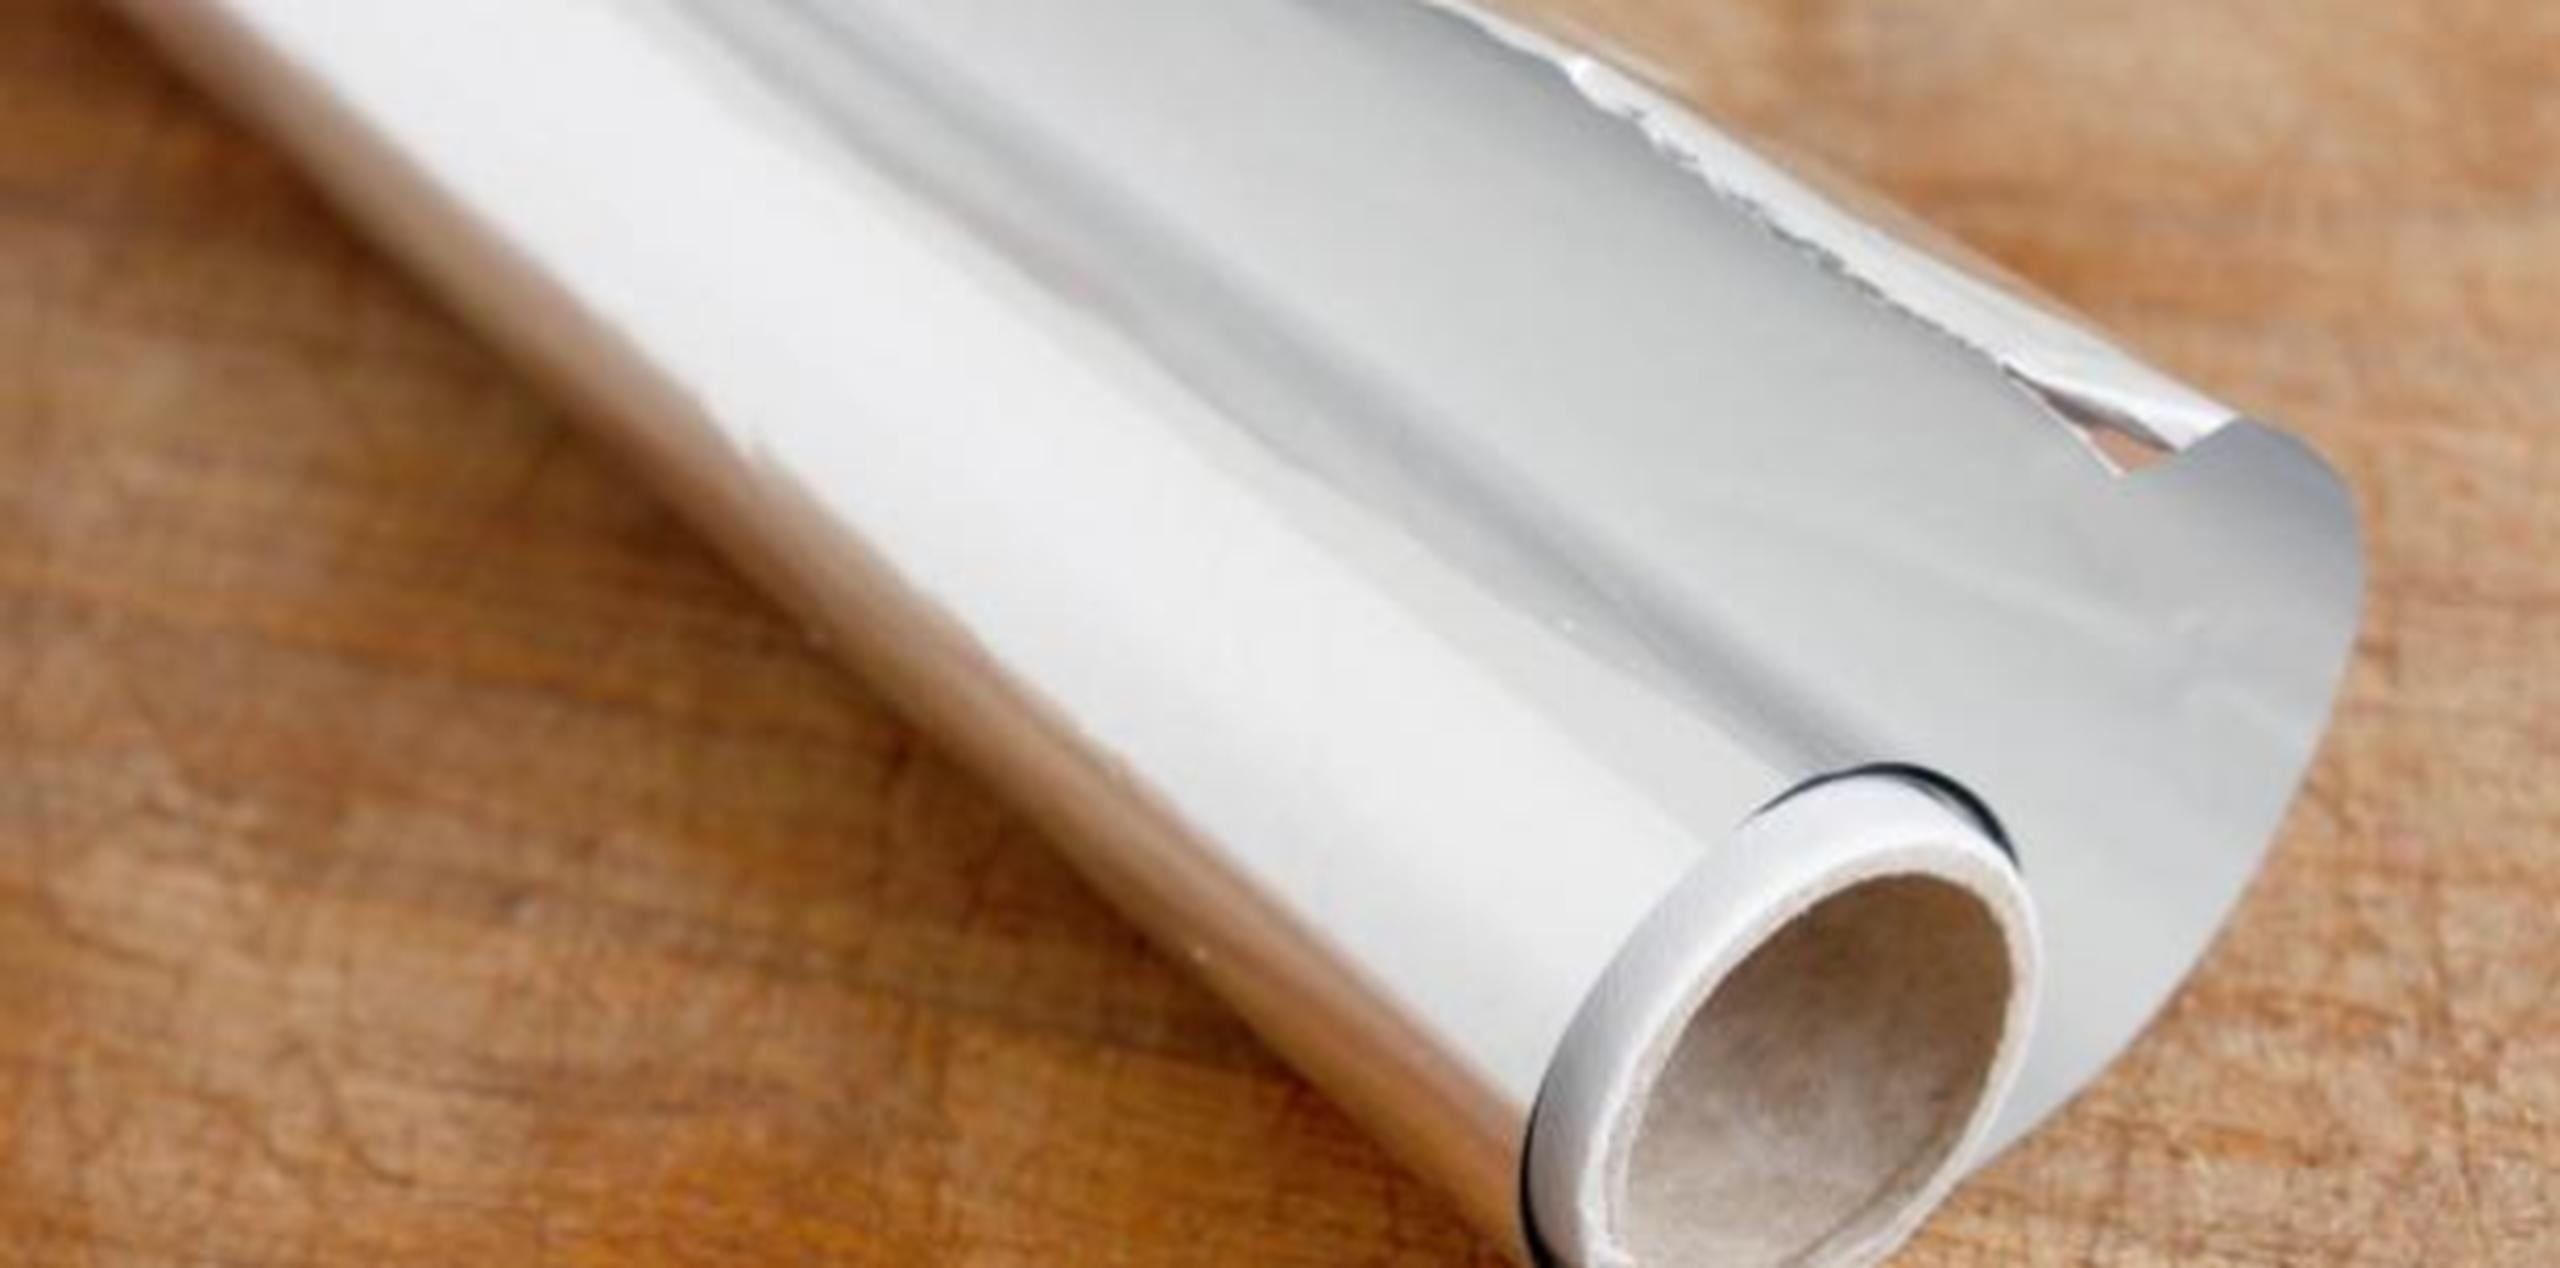 El papel aluminio es muy útil para mantener una casa limpia y ordenada. (Shutterstock)